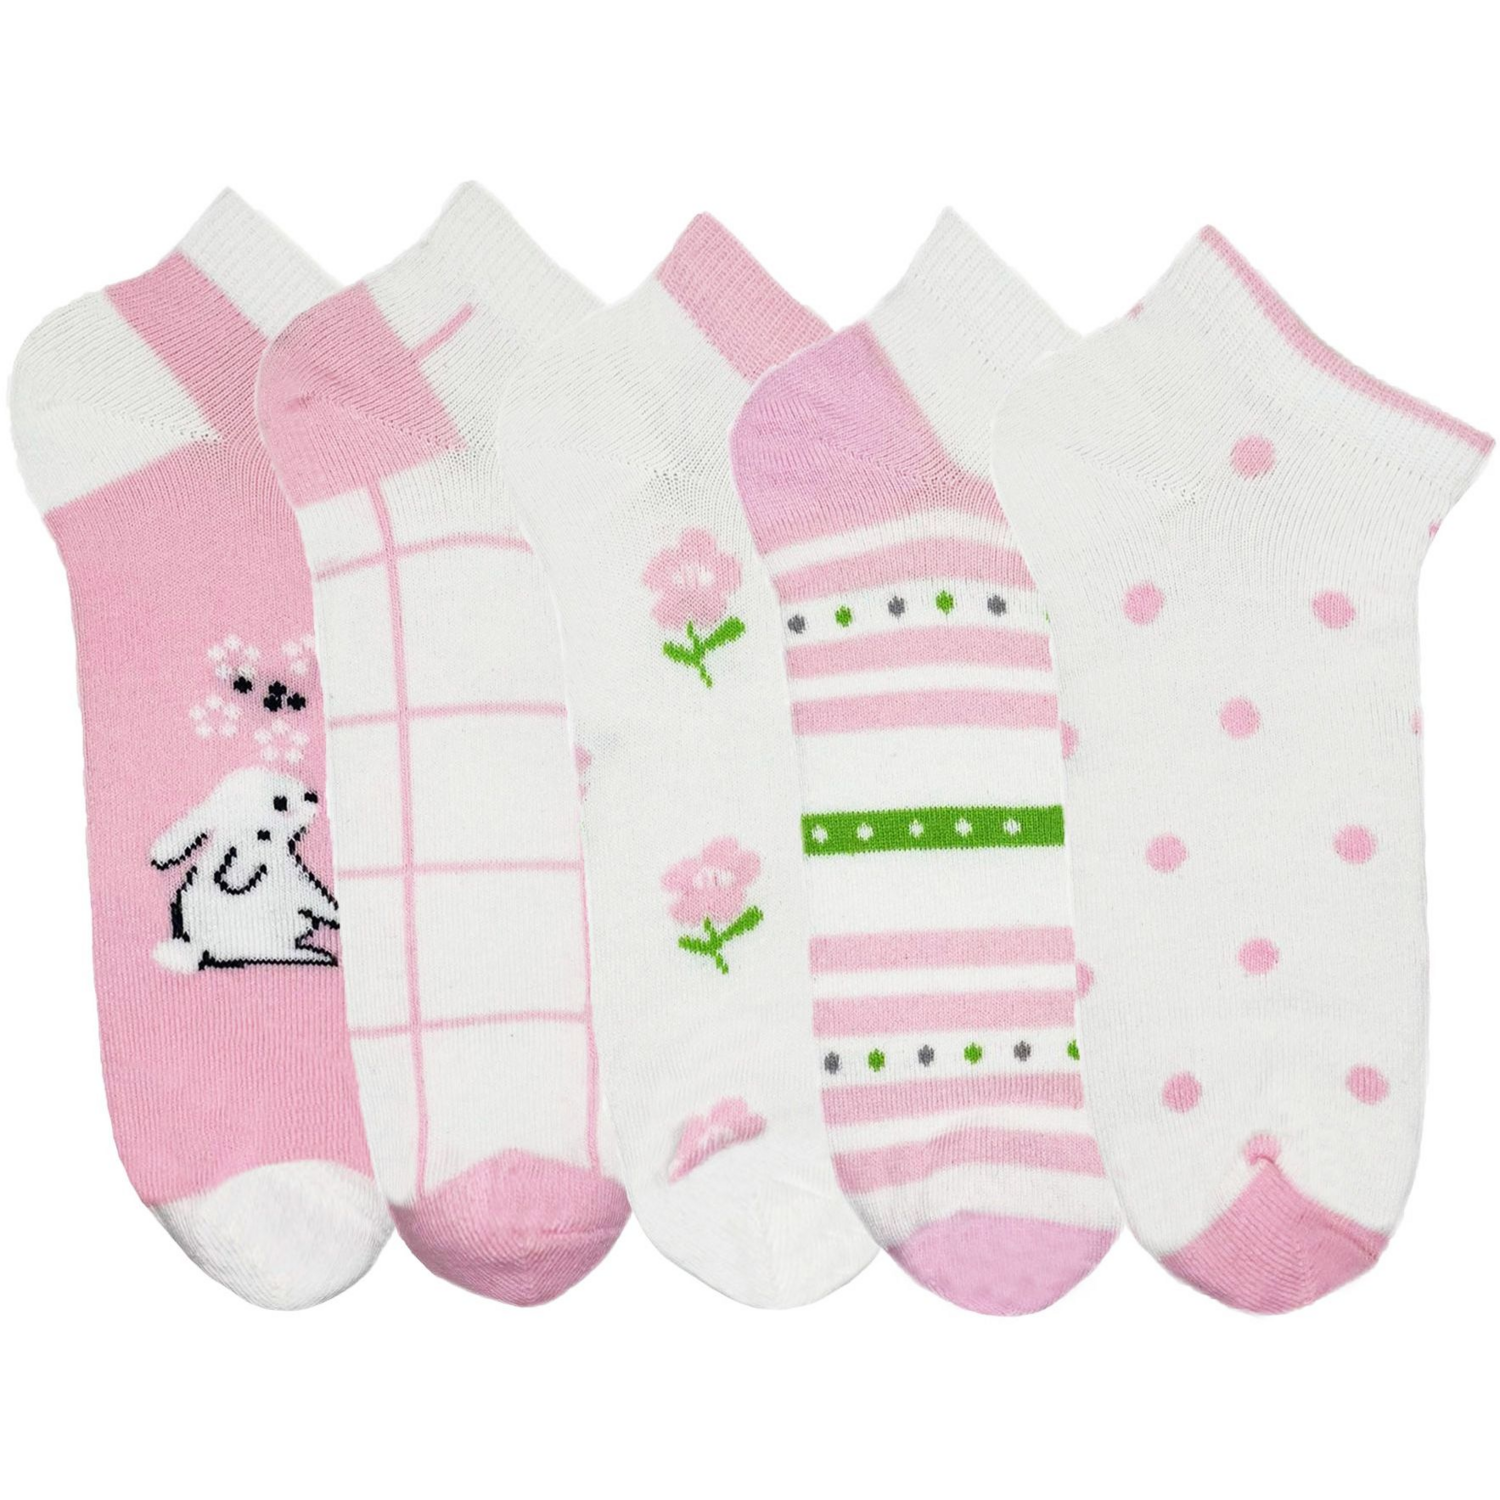 Набір шкарпеток Premier Socks 22-24 5 пар рожеві з принтом (4820163319728)фото